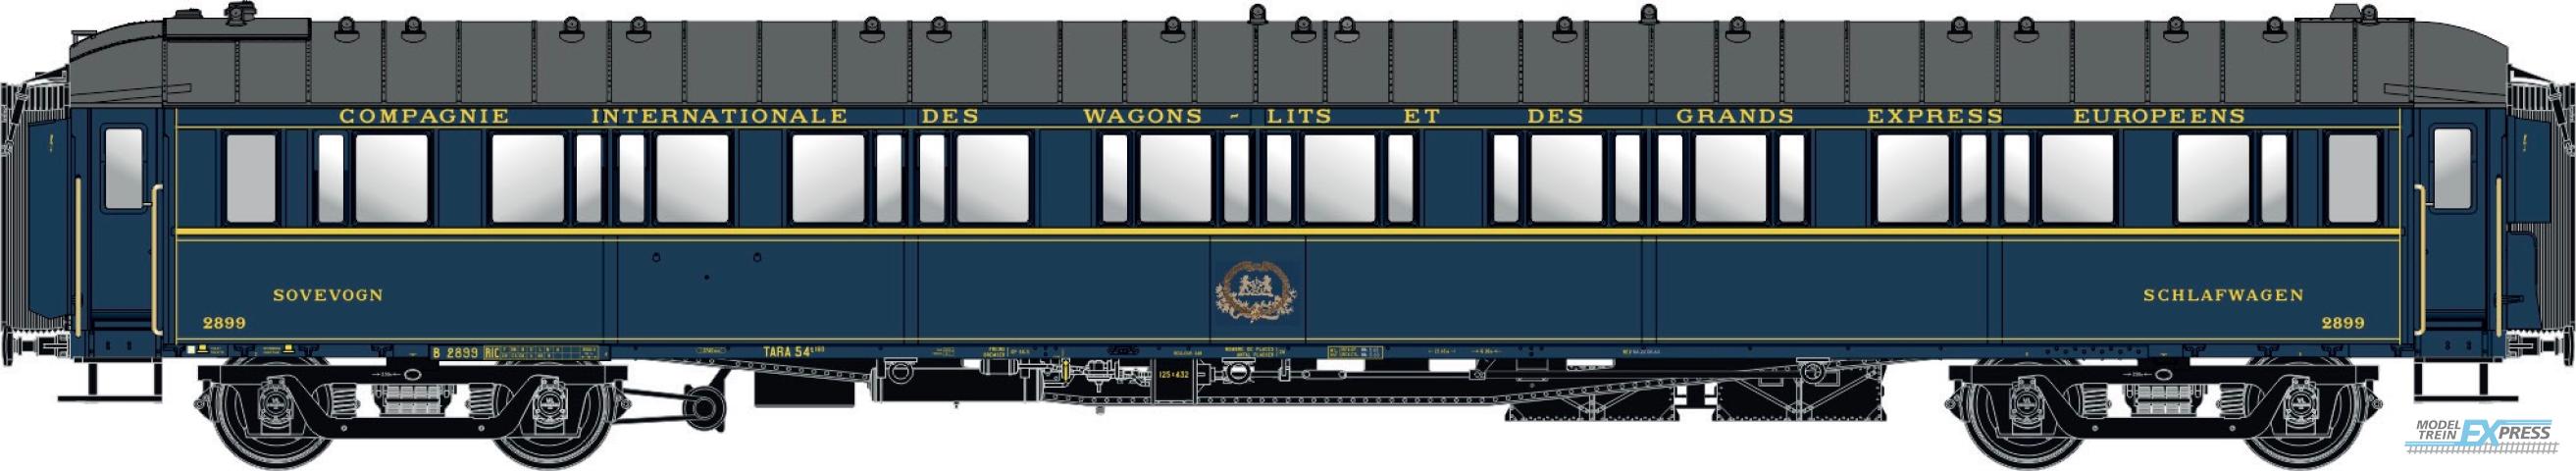 LS Models 49142 SG, blauw, livrei 1956, CIWL, chassis kort, dak normaal, monogram, geregistreerd bij de DSB, met binnenverlichting  /  Ep. IIIC  /  CIWL  /  HO  /  DC  /  1 P.